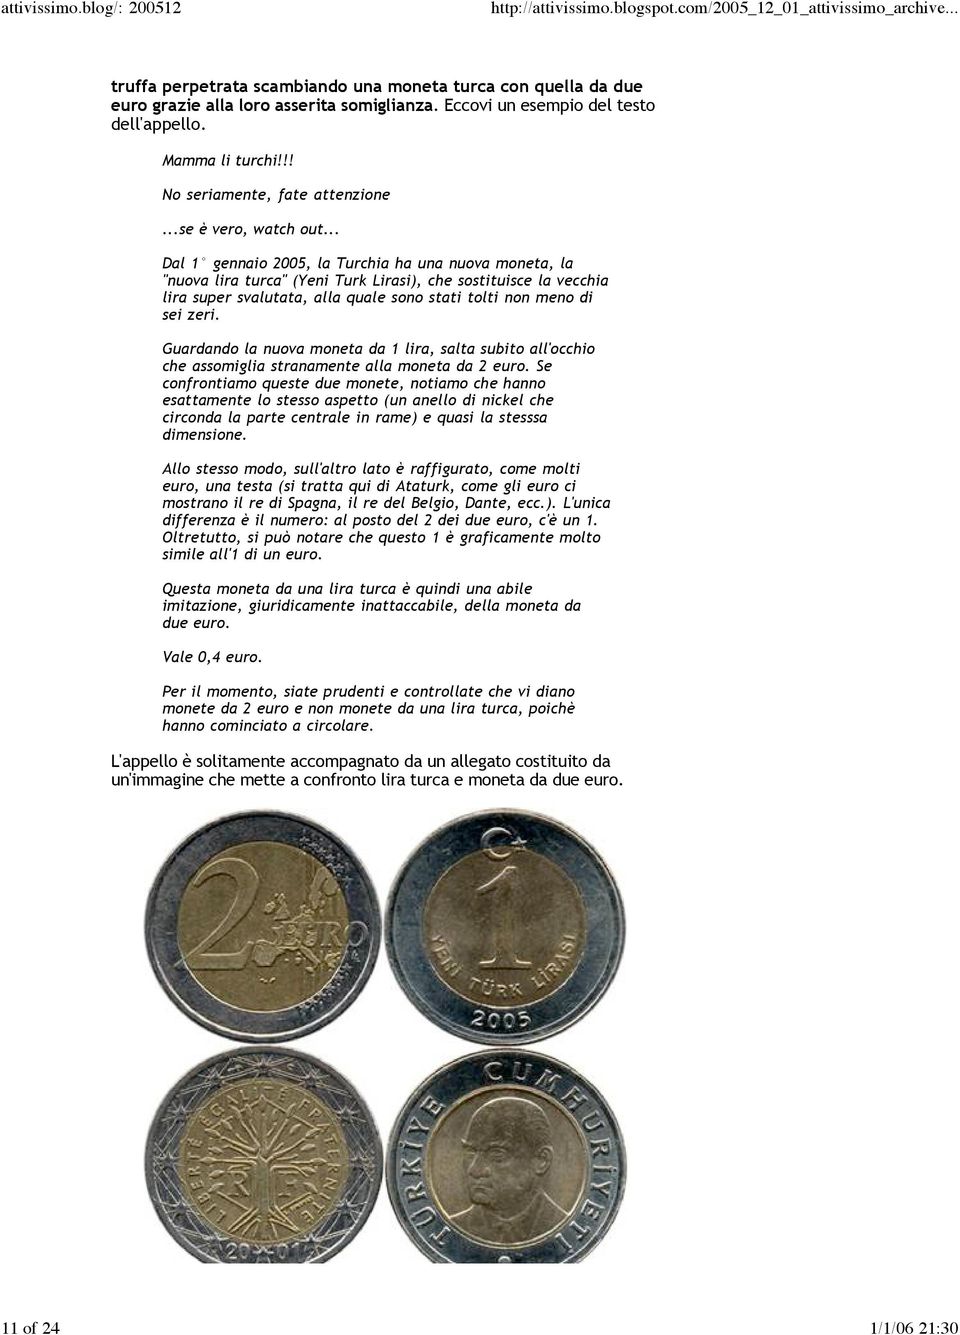 .. Dal 1 gennaio 2005, la Turchia ha una nuova moneta, la "nuova lira turca" (Yeni Turk Lirasi), che sostituisce la vecchia lira super svalutata, alla quale sono stati tolti non meno di sei zeri.